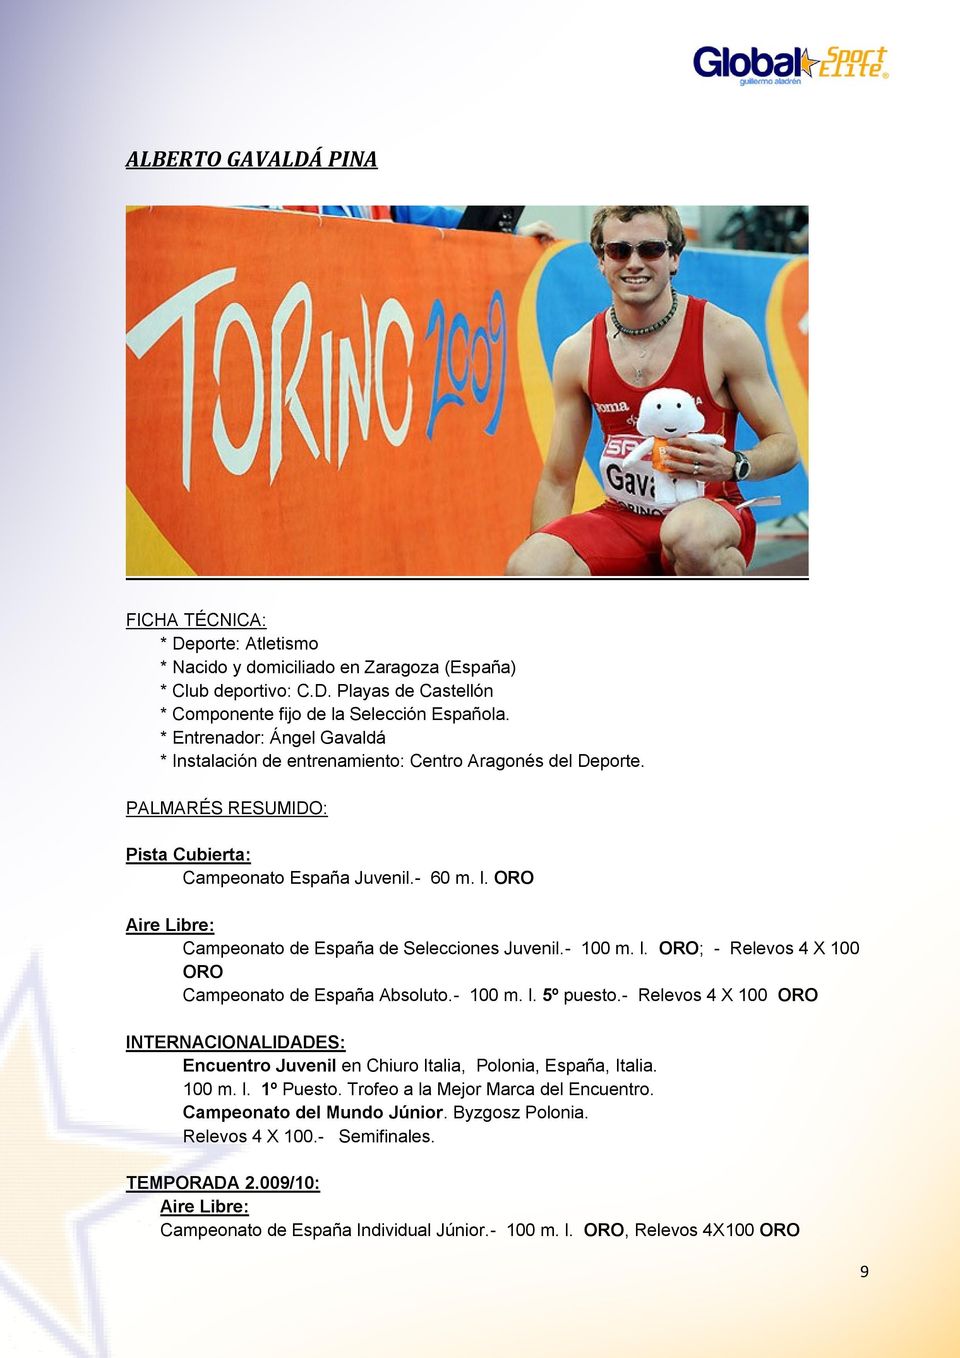 ORO Aire Libre: Campeonato de España de Selecciones Juvenil.- 100 m. l. ORO; - Relevos 4 X 100 ORO Campeonato de España Absoluto.- 100 m. l. 5º puesto.